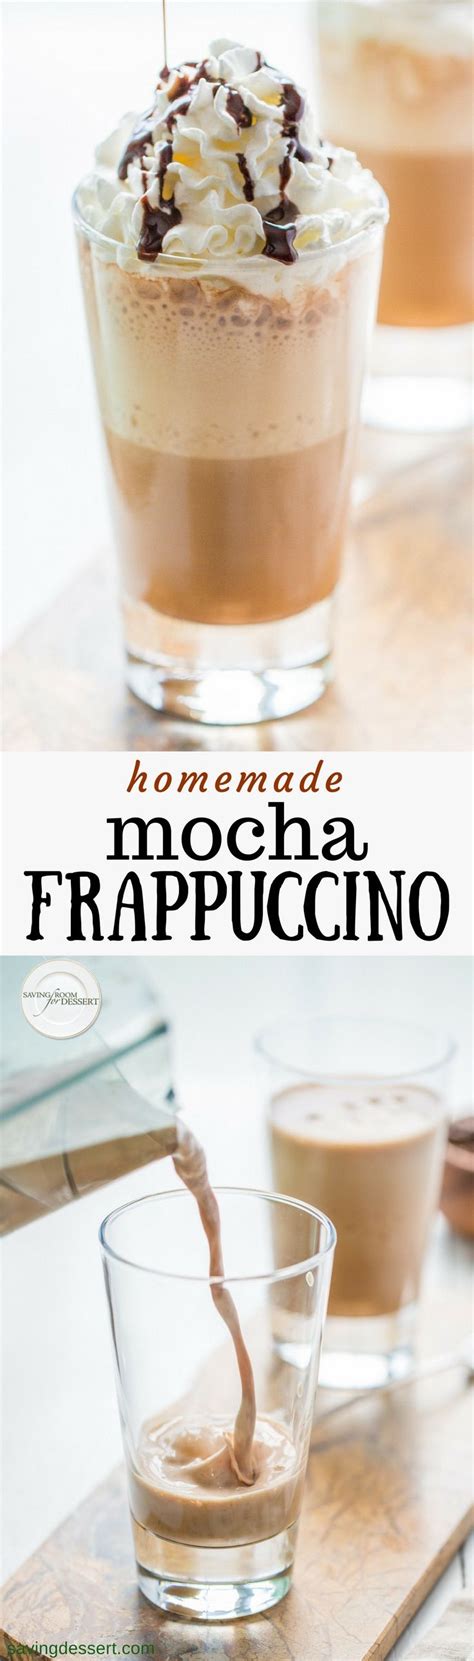 homemade mocha frappuccino recipe homemade mocha mocha frappuccino